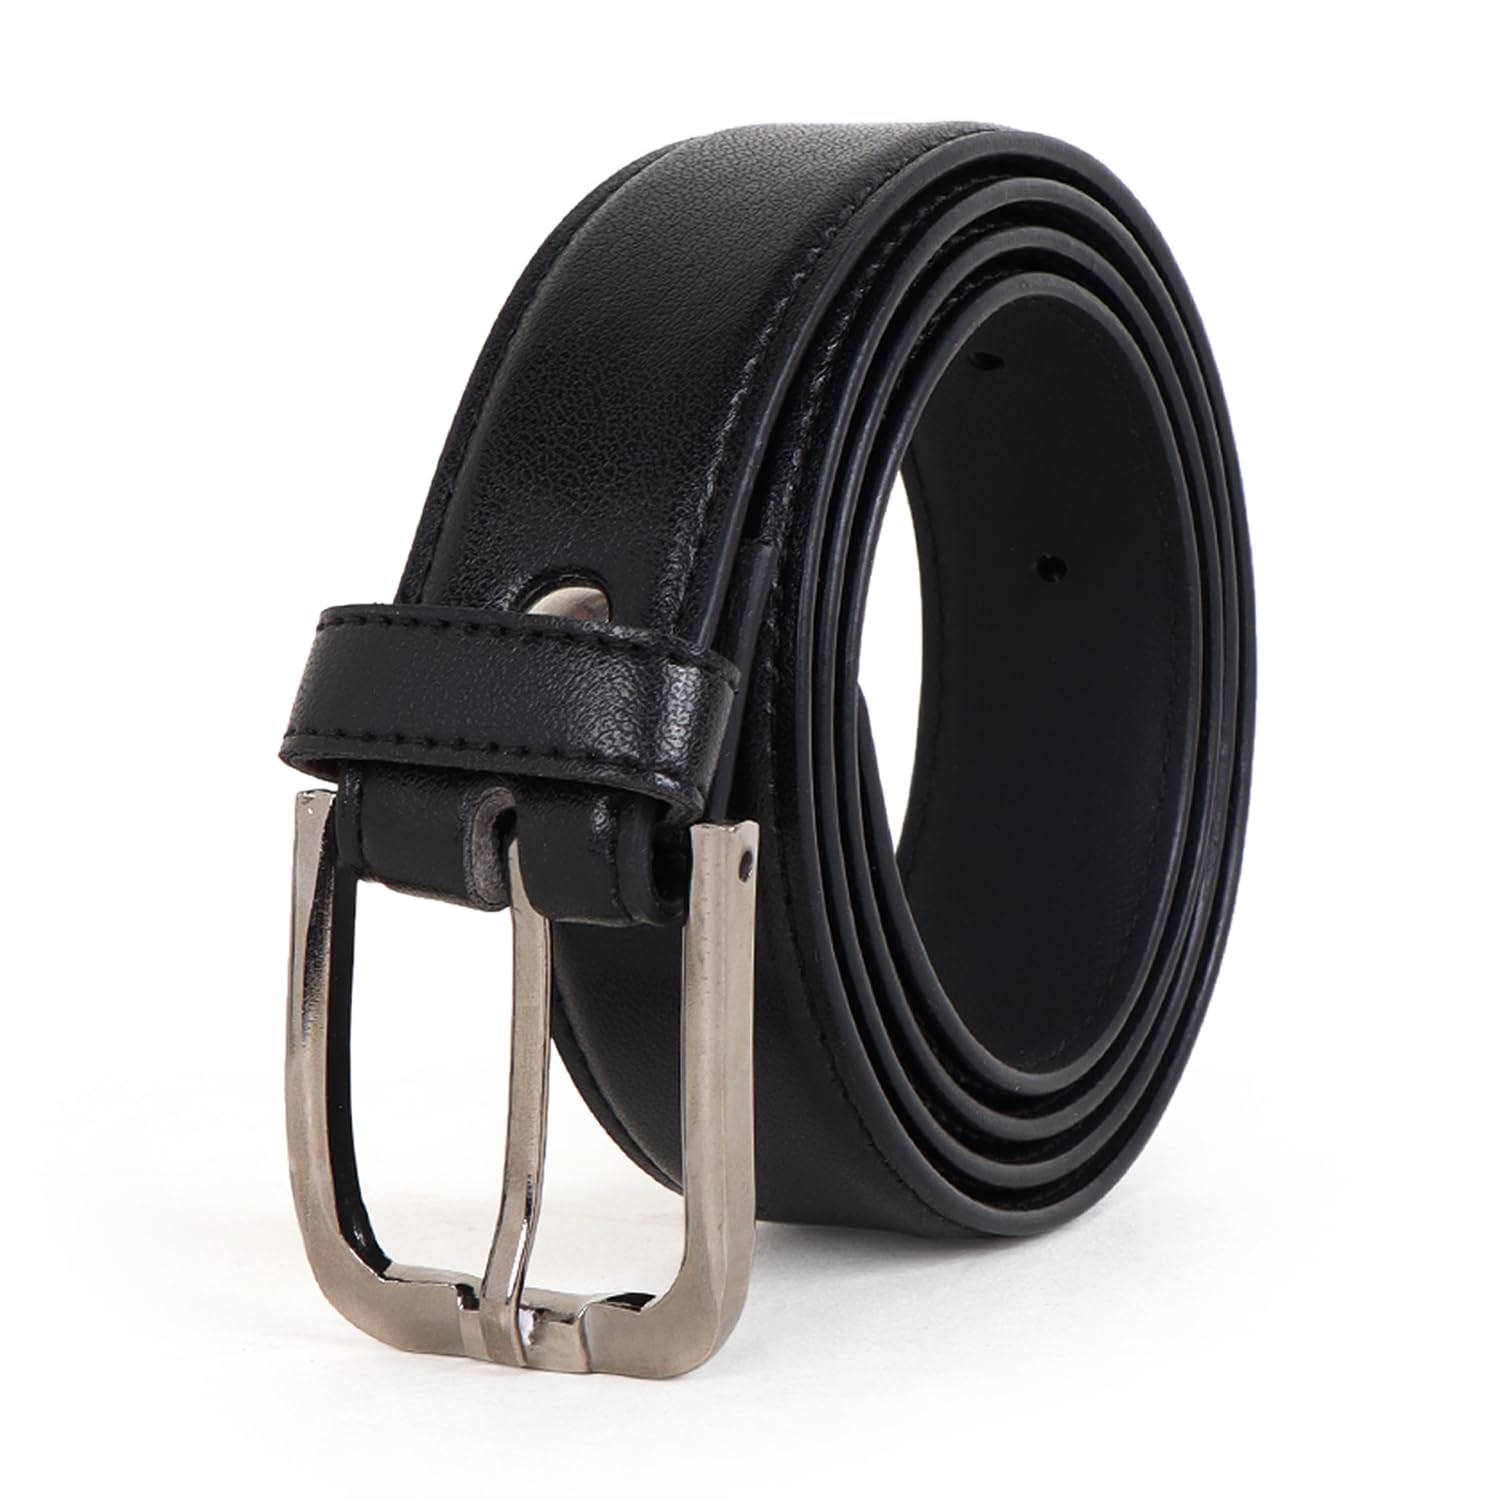 CIMONI® Premium Vegan Leather Belt for Men Jeans & Pants Wear Classic Design Formal & Casual Leatherette Waist Belt